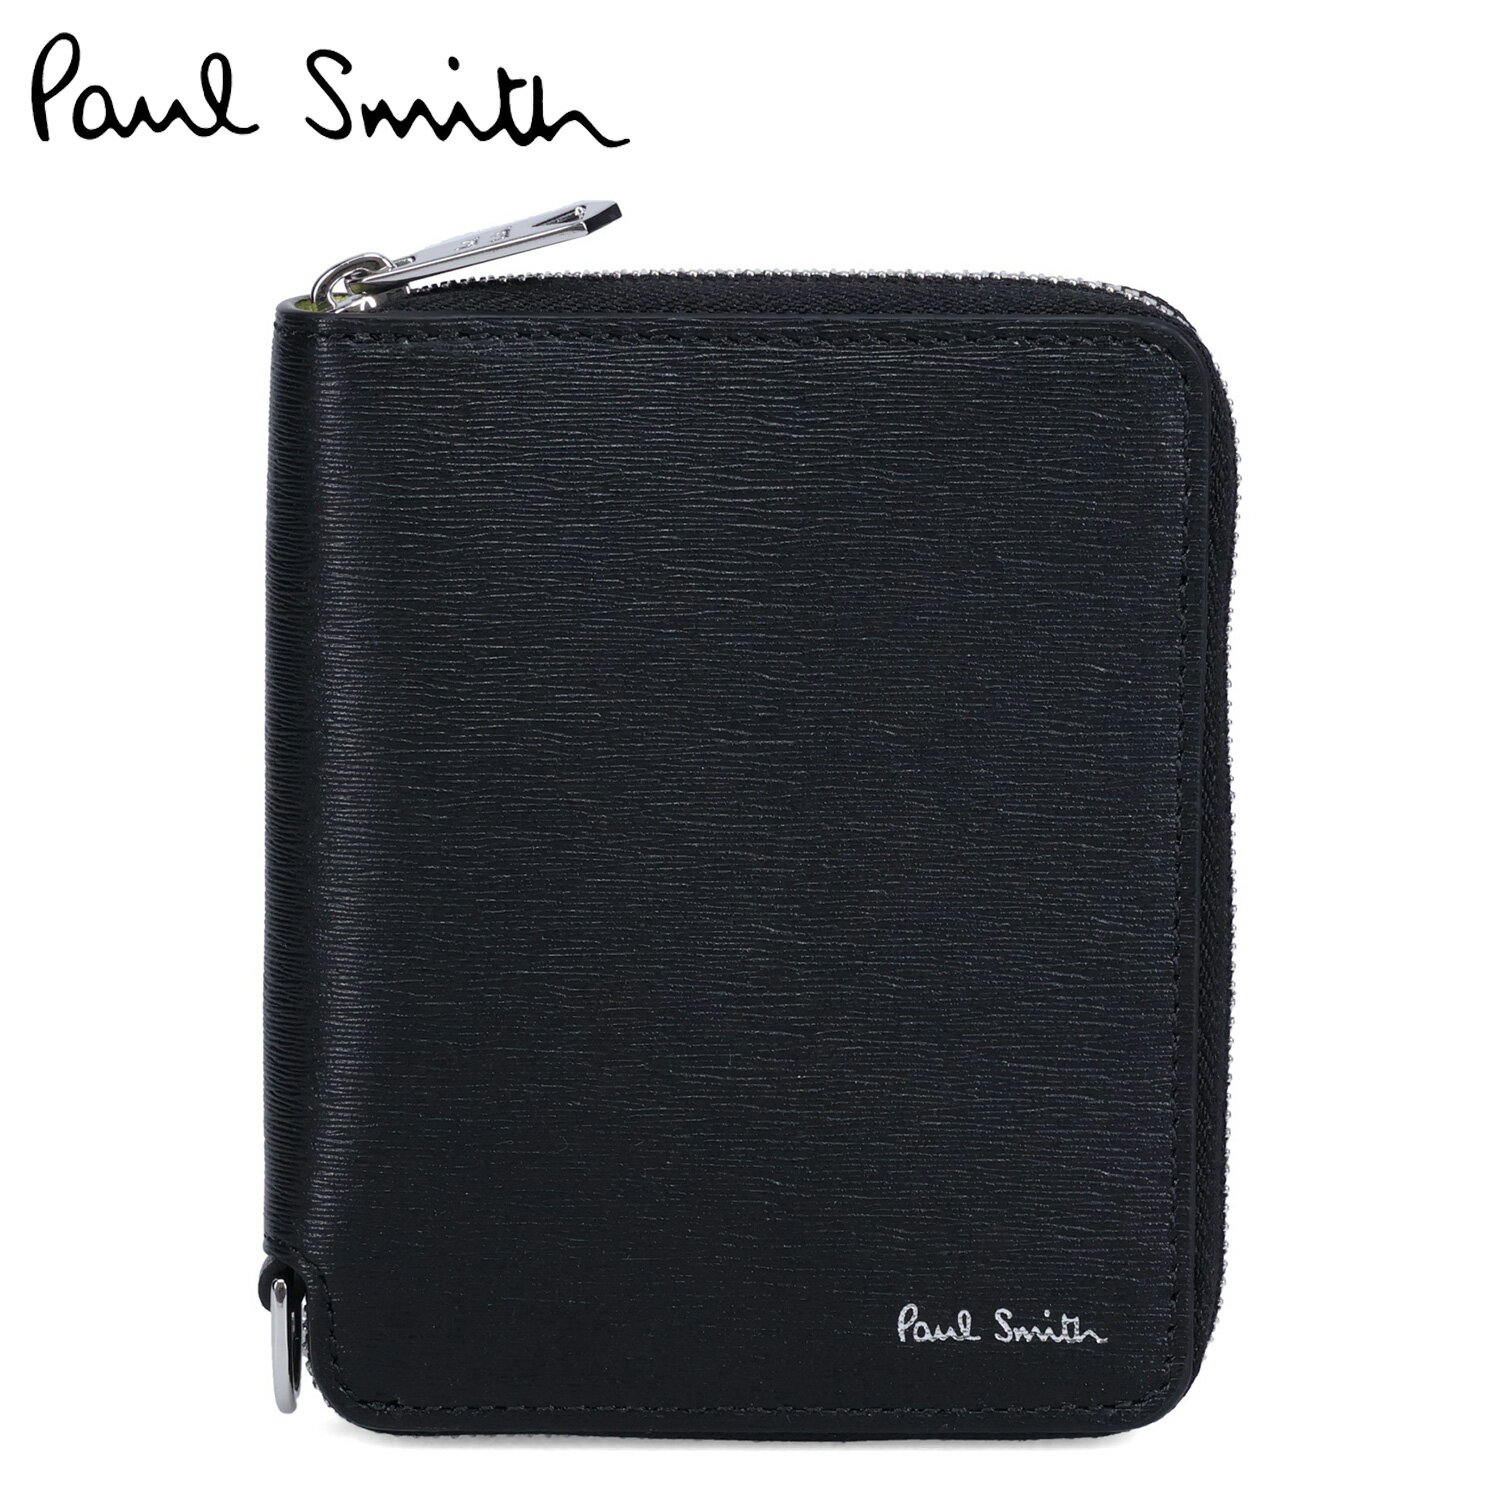 ポール・スミス 本革財布 メンズ Paul Smith WALLET ZIP BFOLD ポールスミス 財布 二つ折り財布 メンズ 本革 ラウンドファスナー ブラック 黒 M1A-6702-KSTRGS